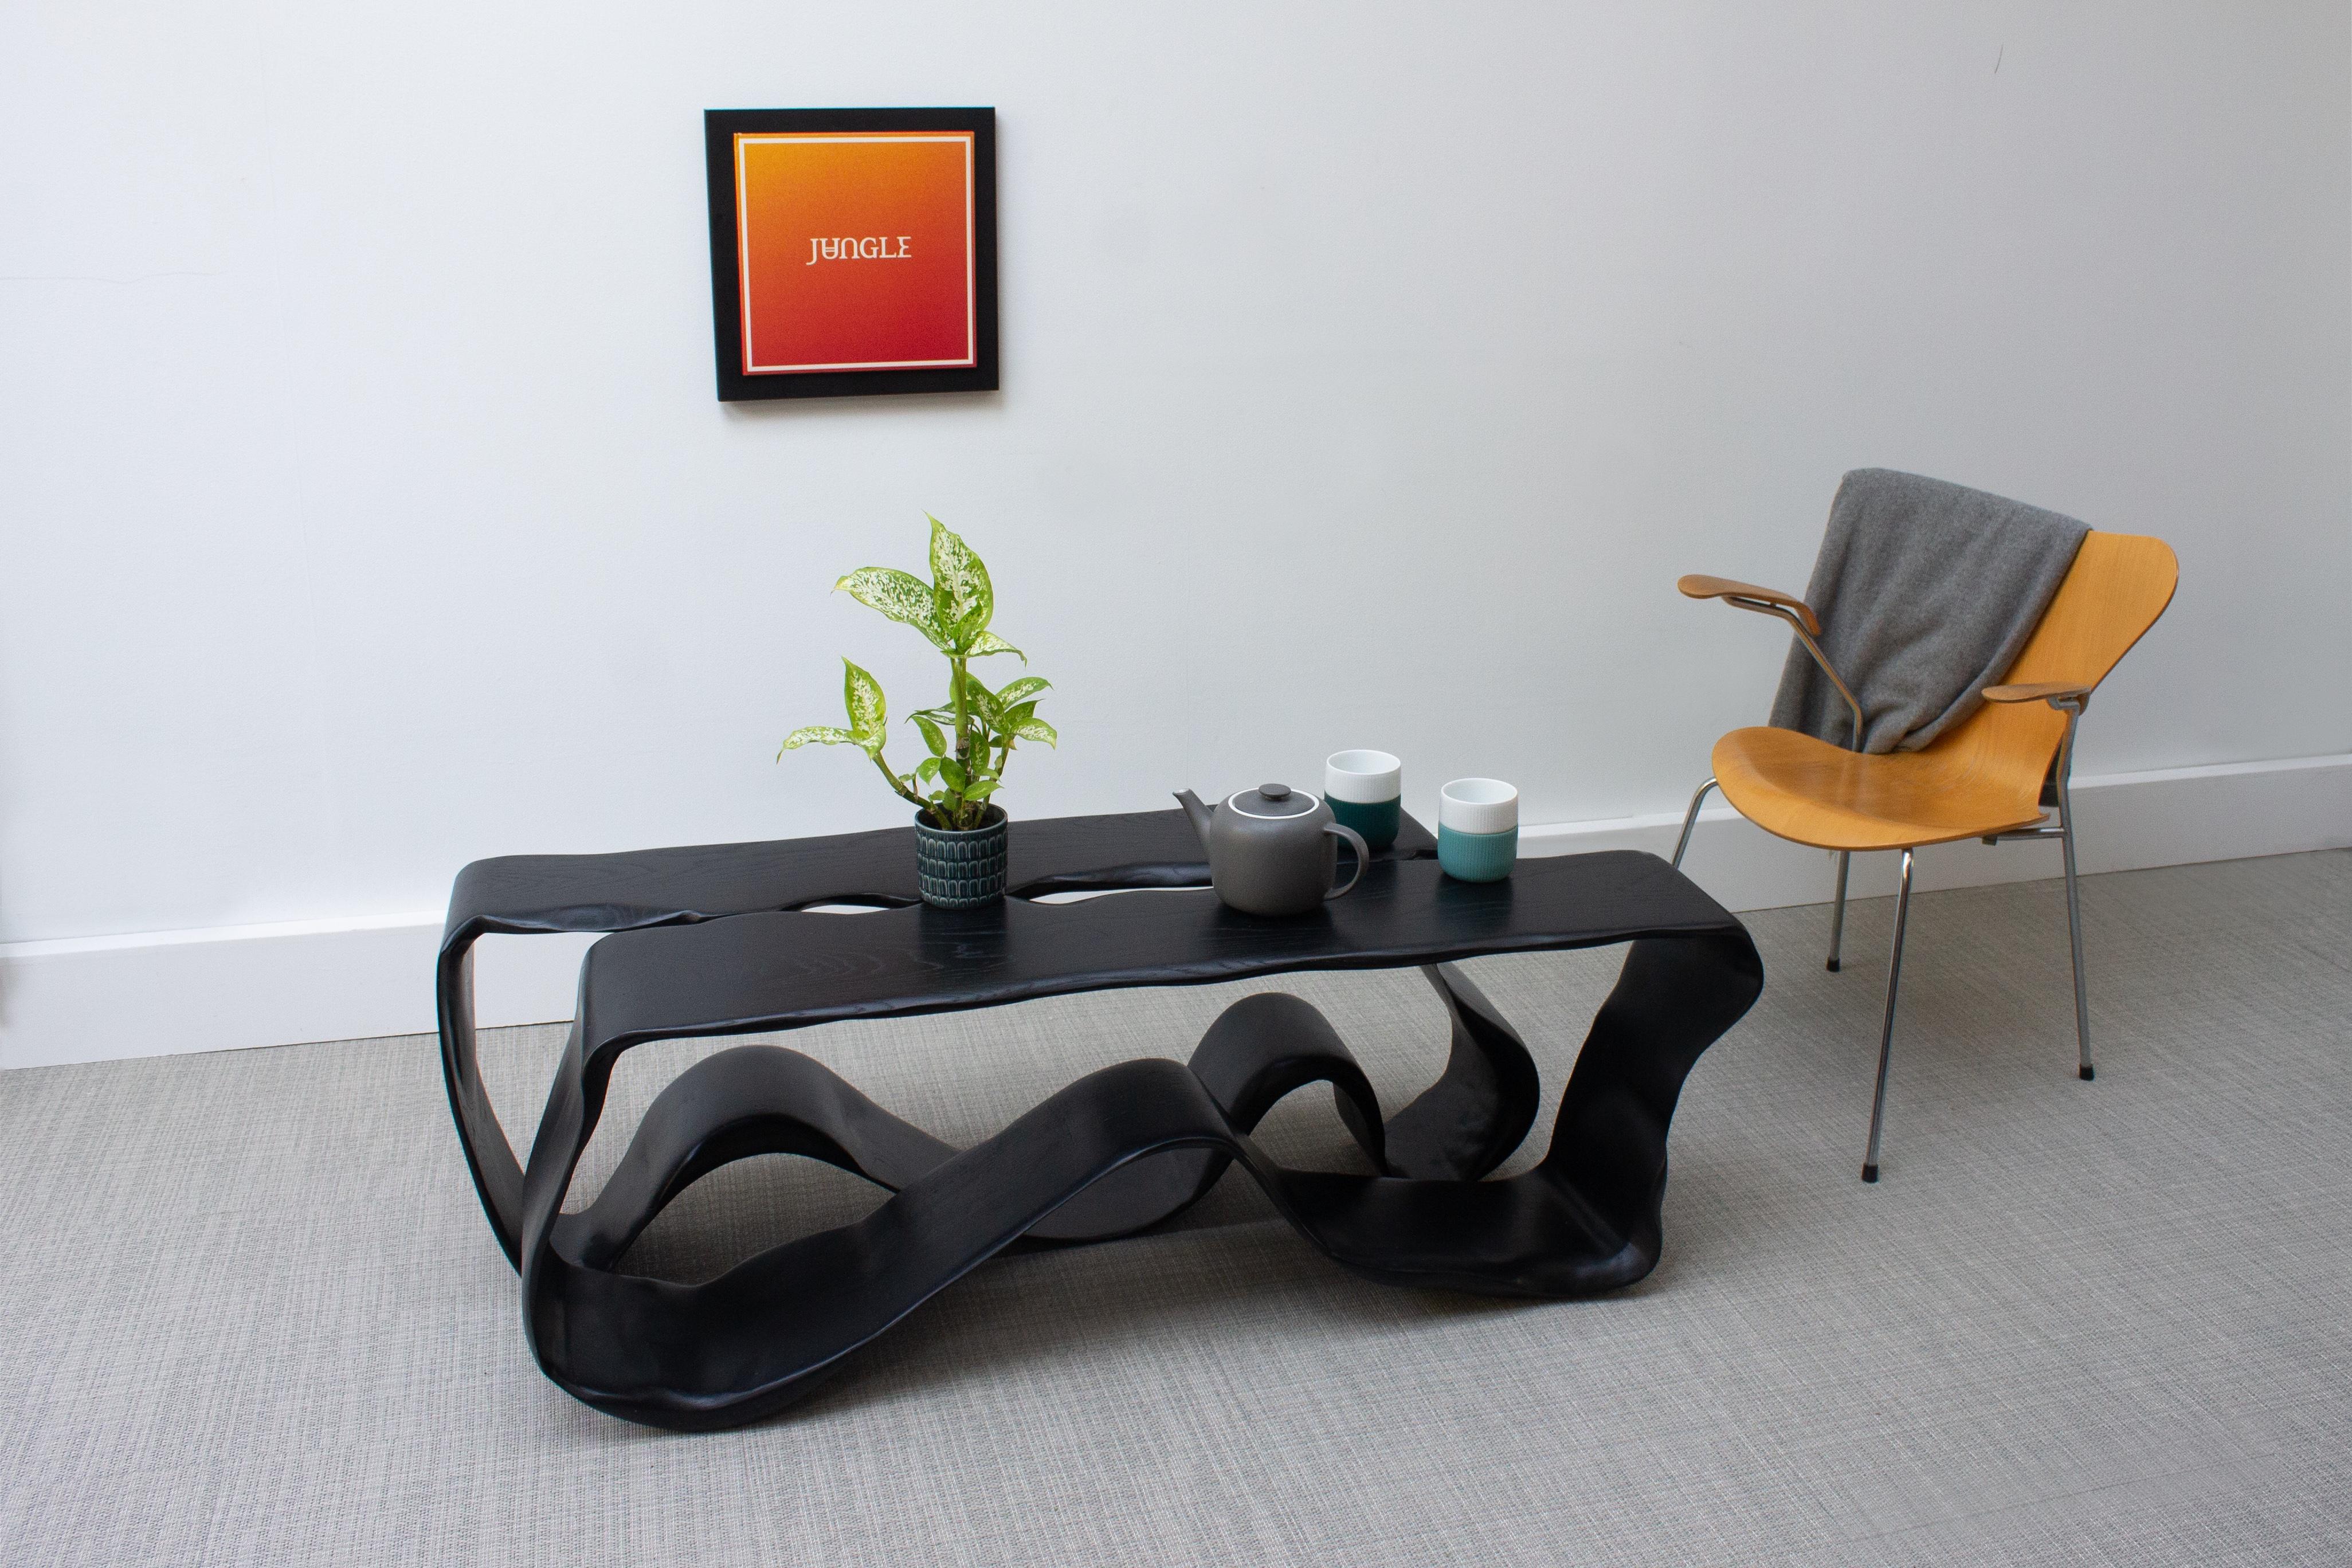 Eine neue Ergänzung zu unserer Ribbon Collection'S. Der Ribbon Low Table wurde aus Hunderten von Schichten Eschenfurnier geschnitzt, geformt und gebeizt, um diese einzigartige Formation zu erhalten.

Der skulpturale niedrige Tisch erweckt ein Gefühl